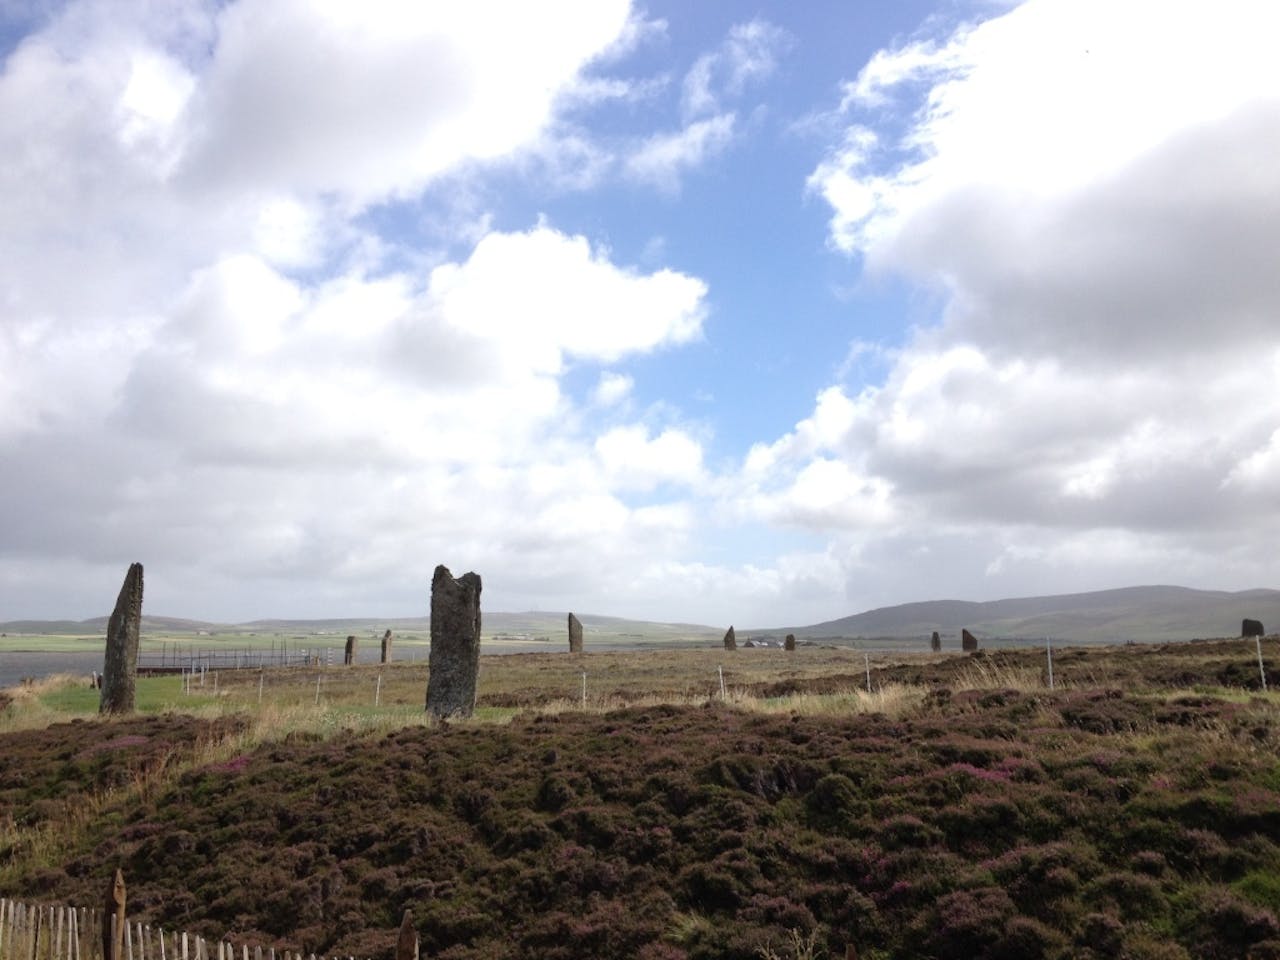 Een groep stenen pilaren in een veld met een bewolkte hemel.